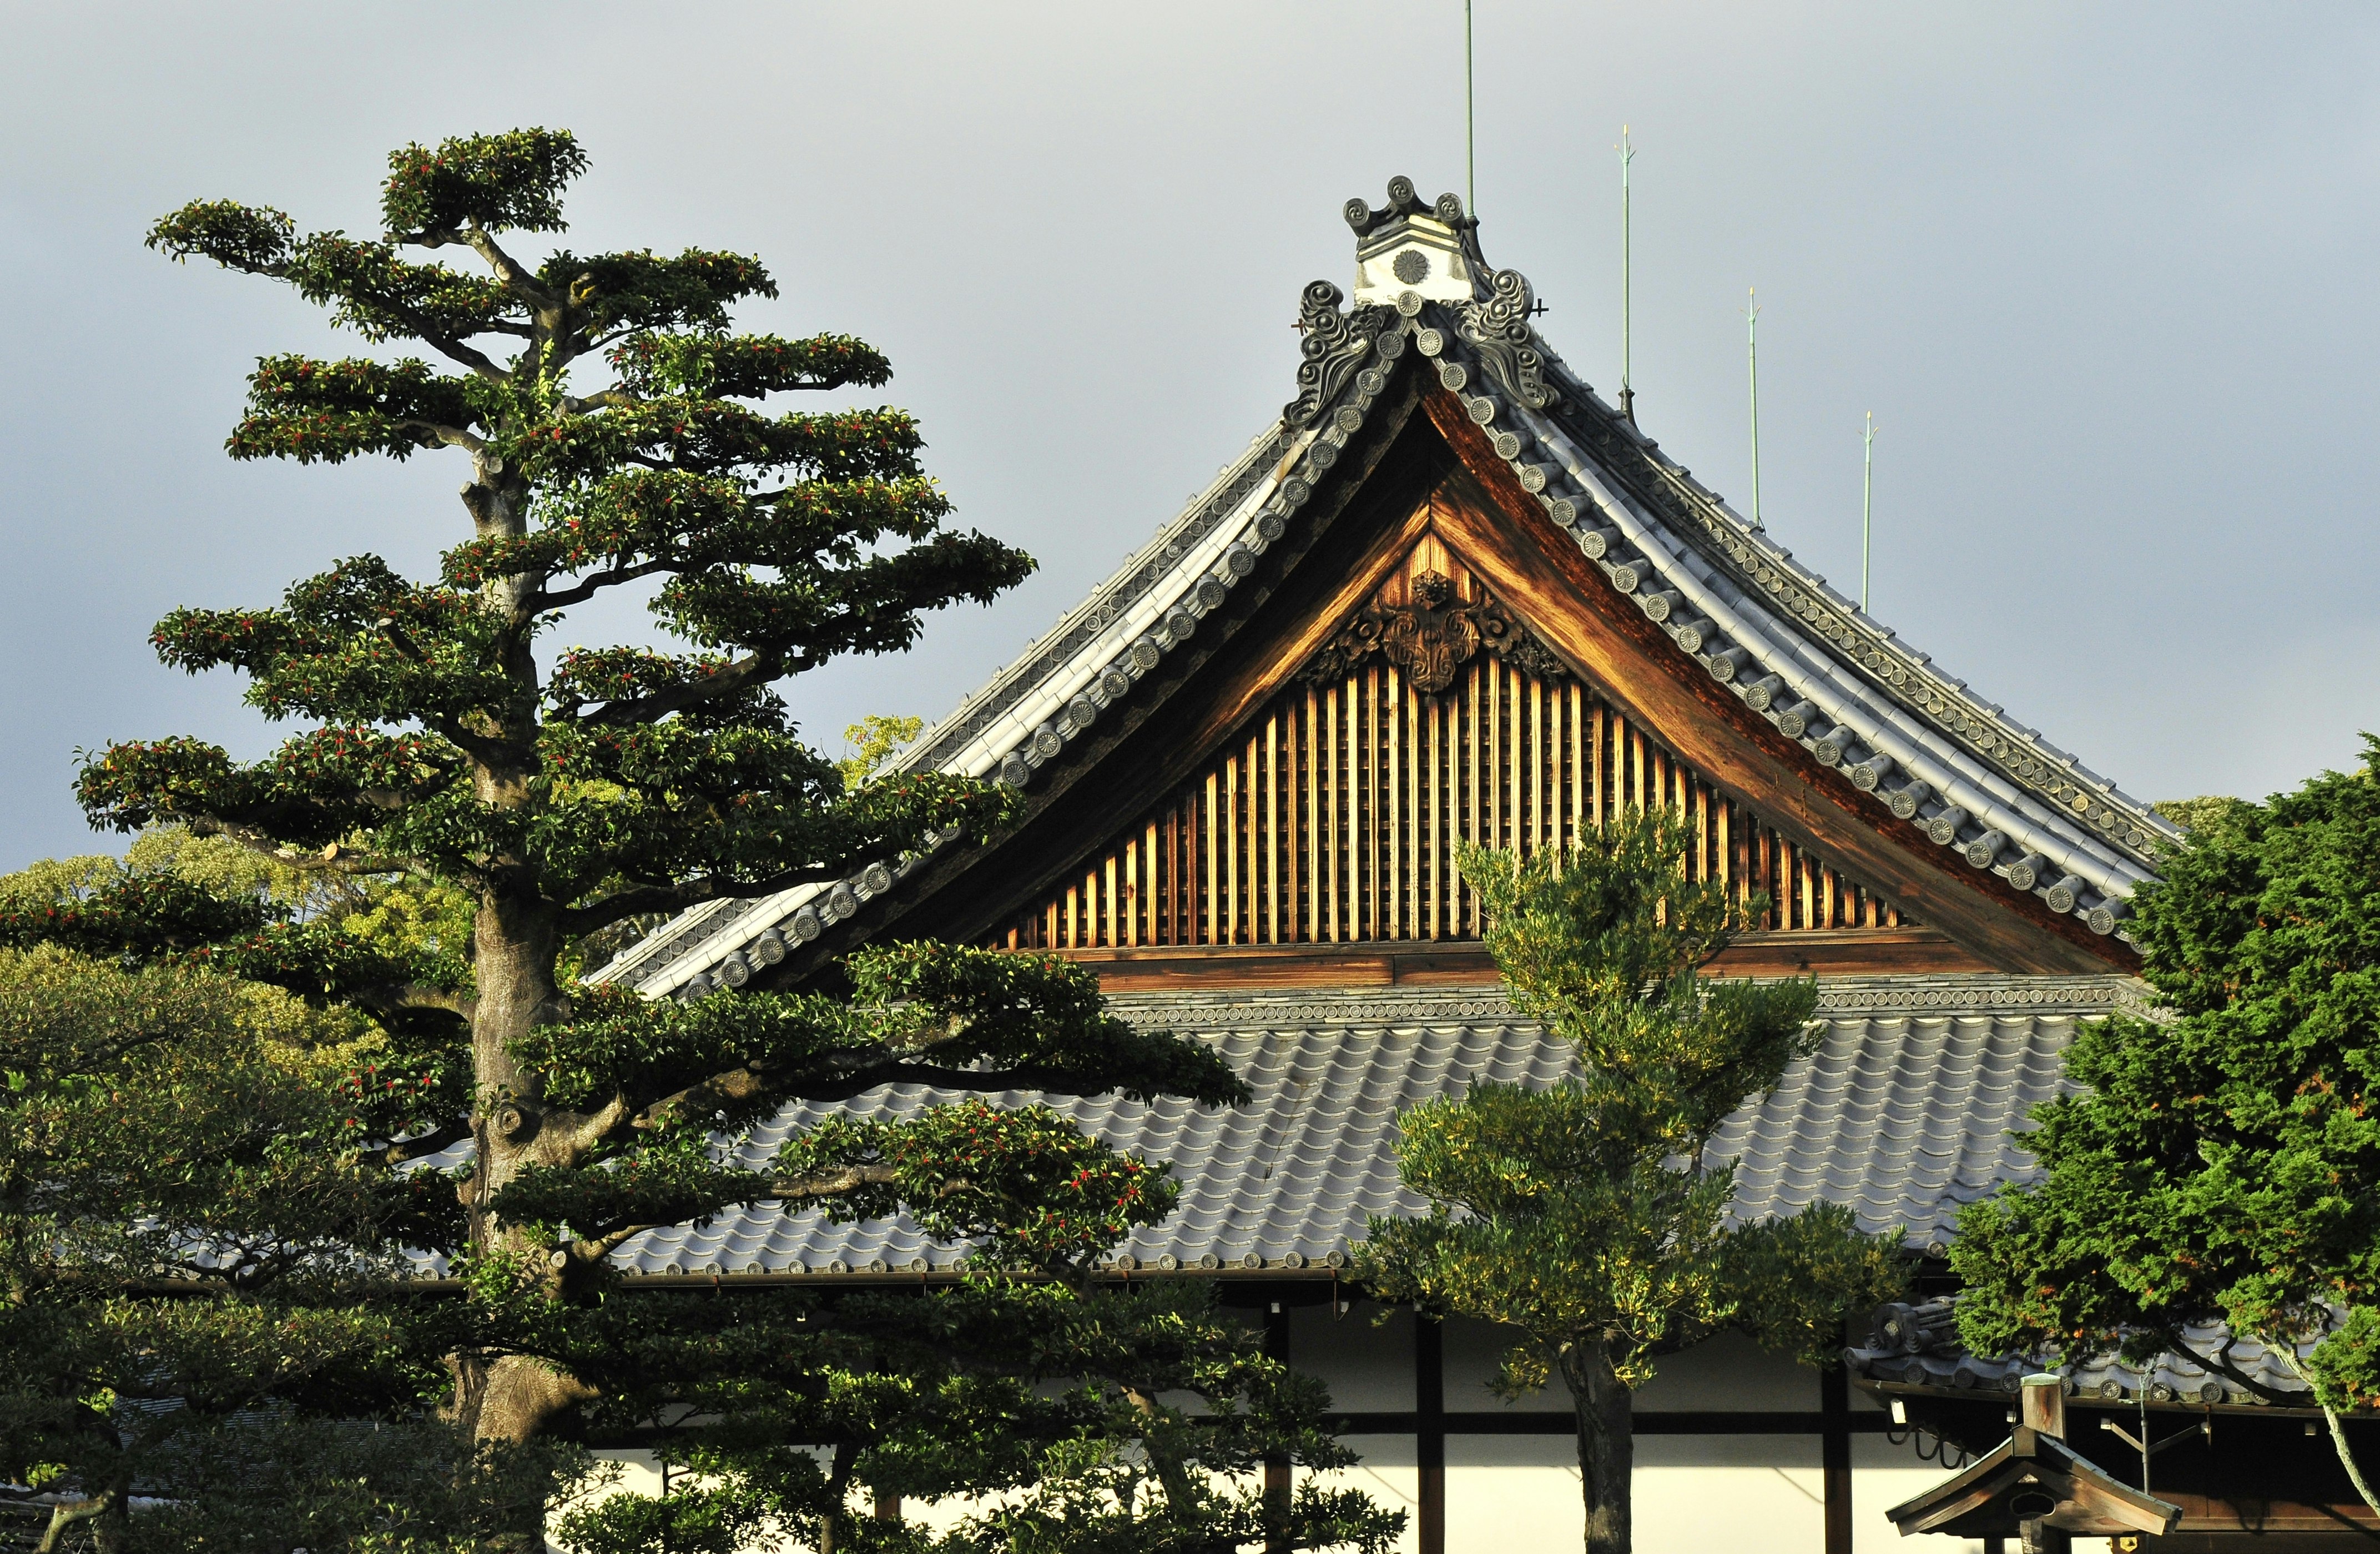 Ninomaru Garden adjoining the Ninomaru Palace at the Nijō Castle park ground.